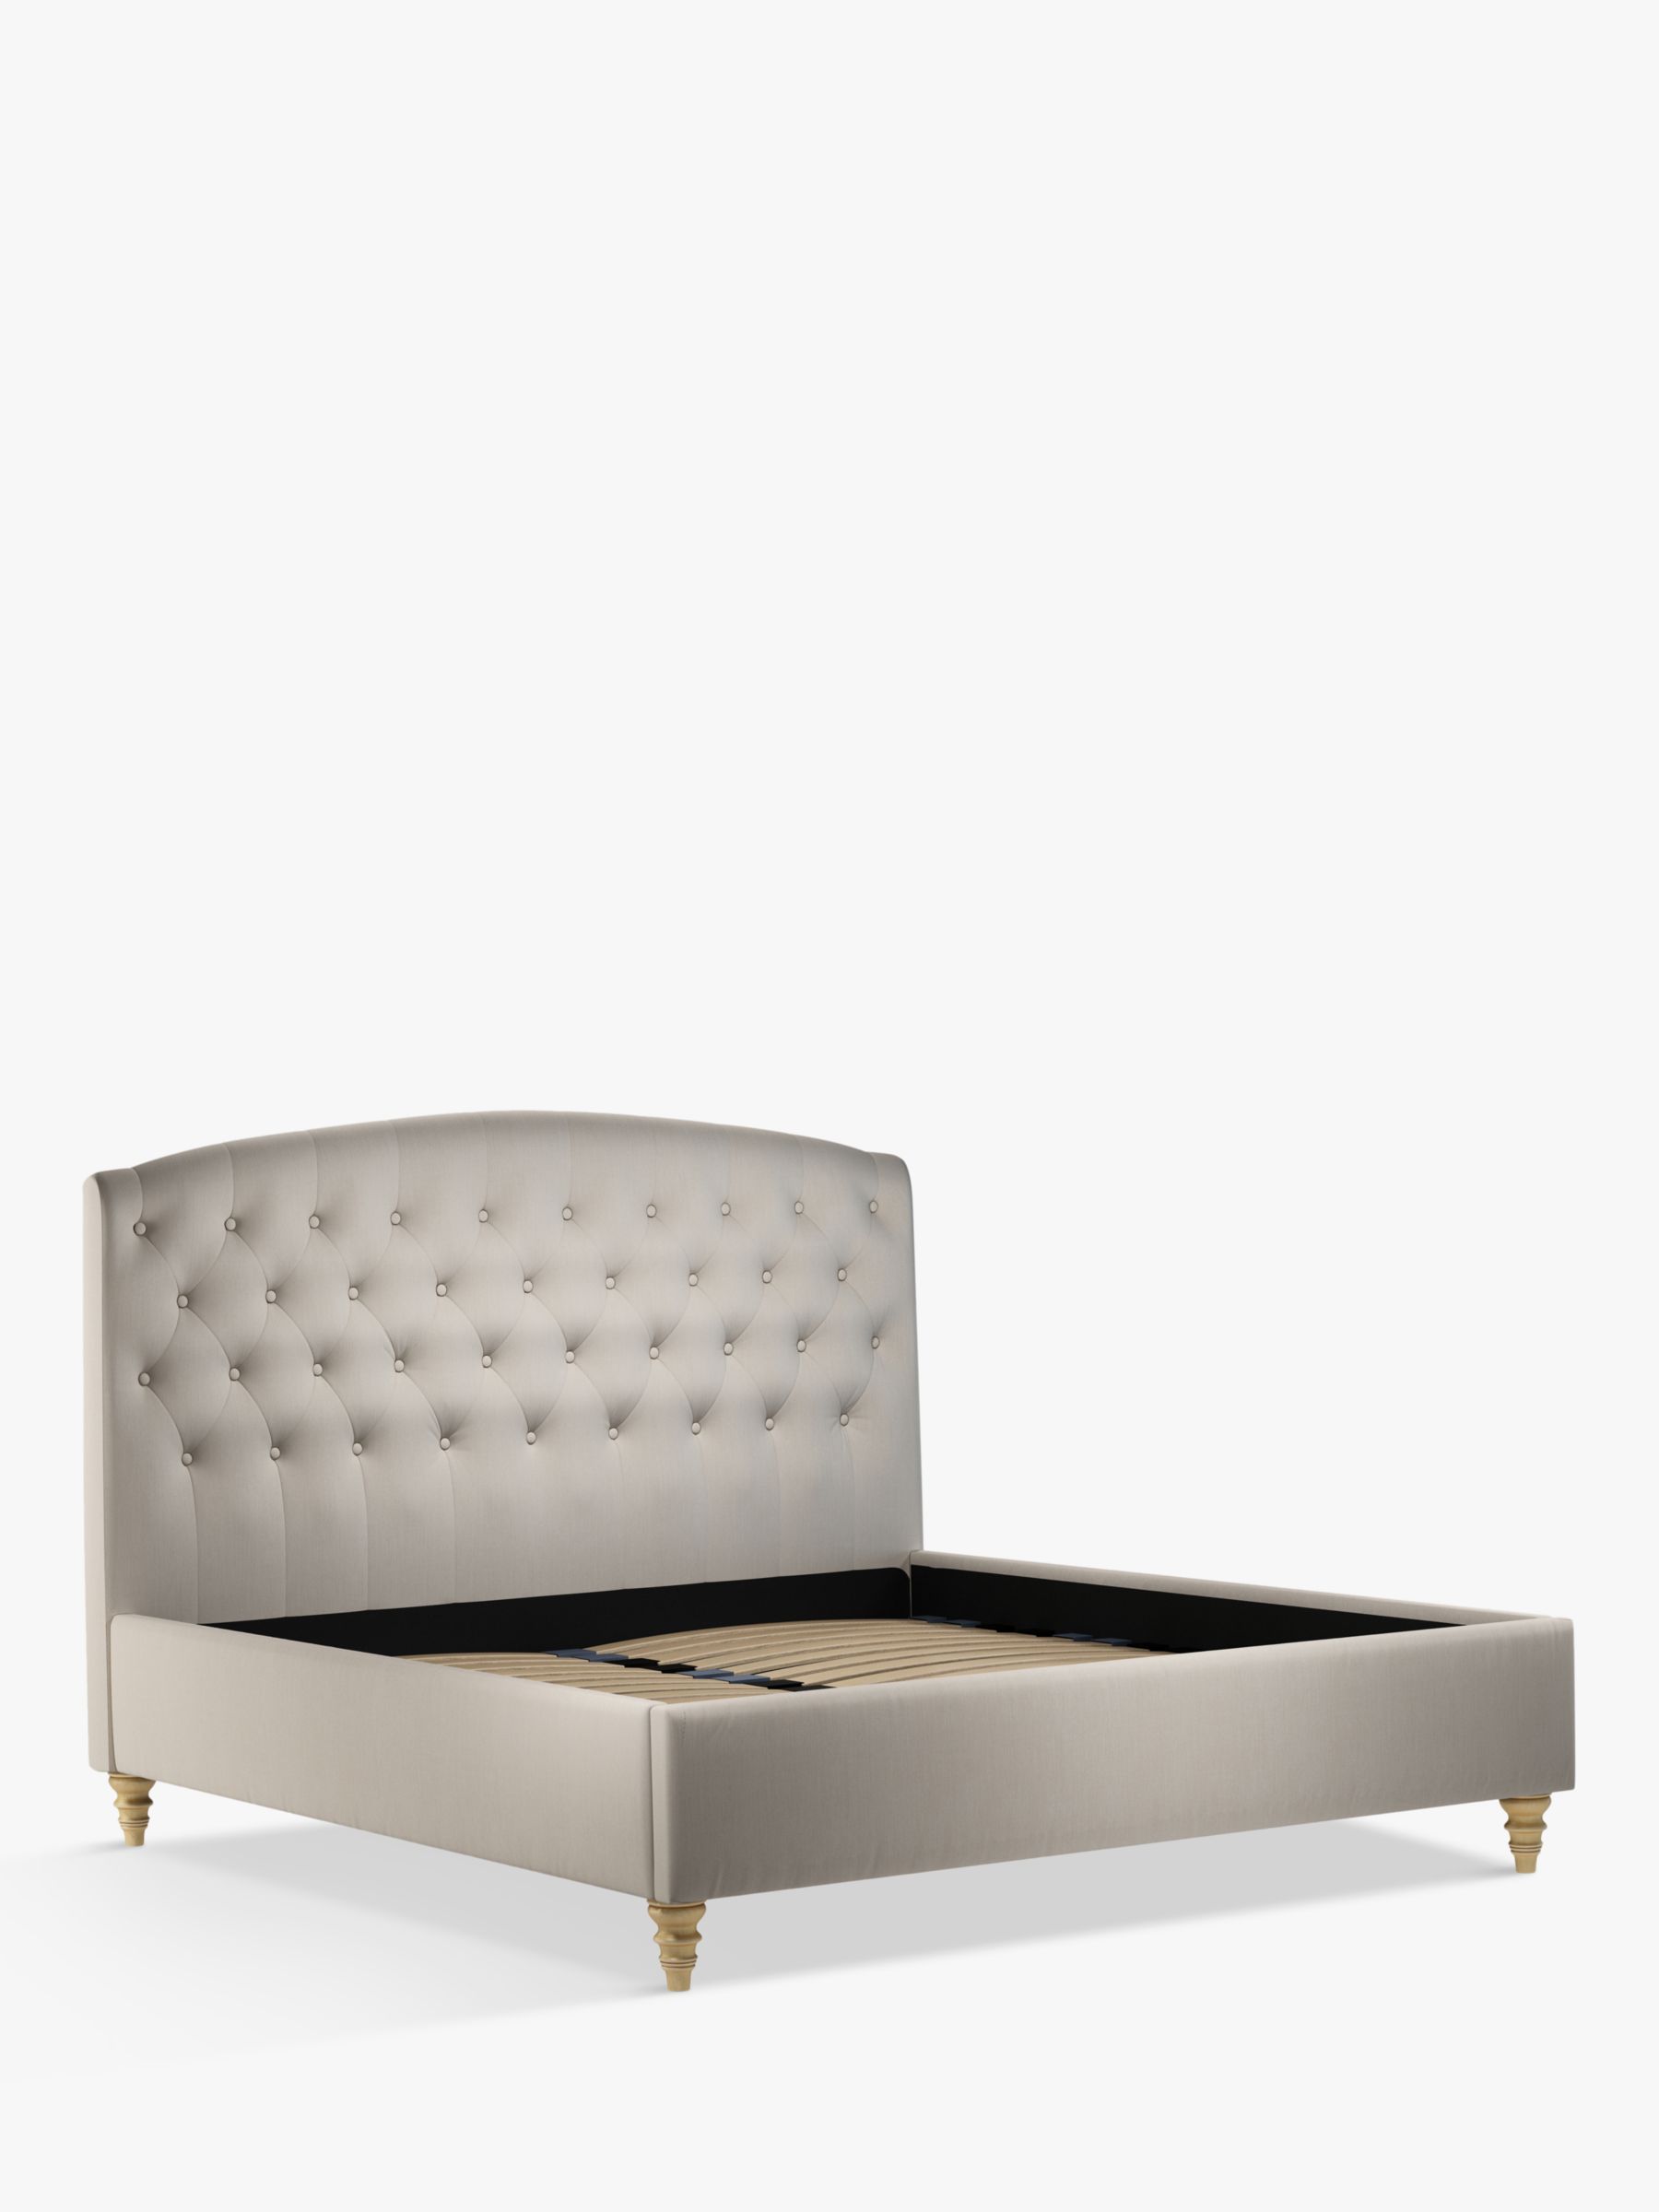 John Lewis Partners Rouen Upholstered Bed Frame Super King Size